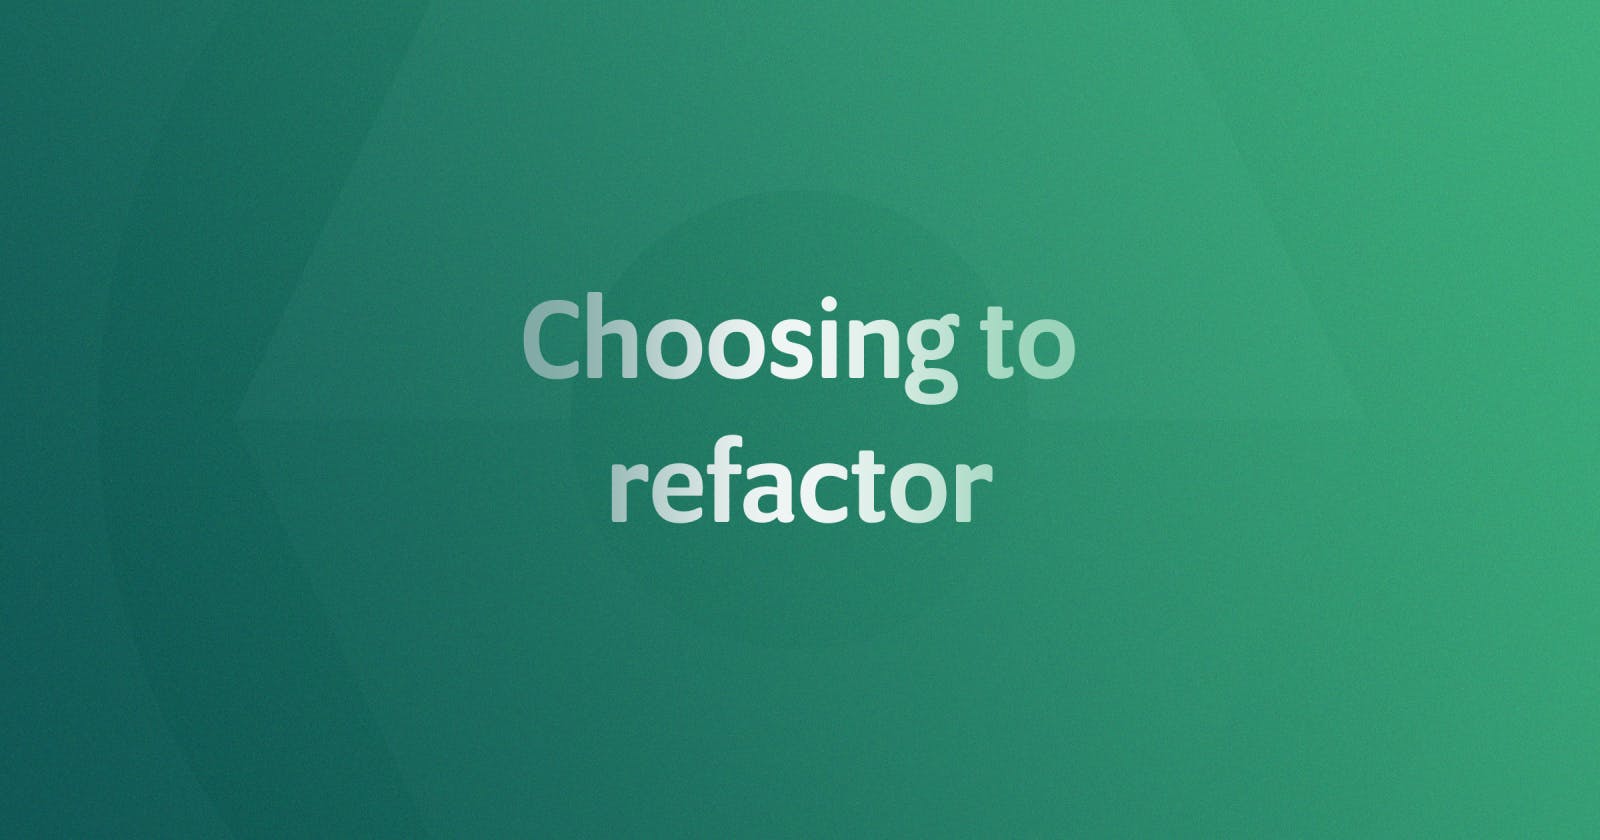 Choosing to refactor